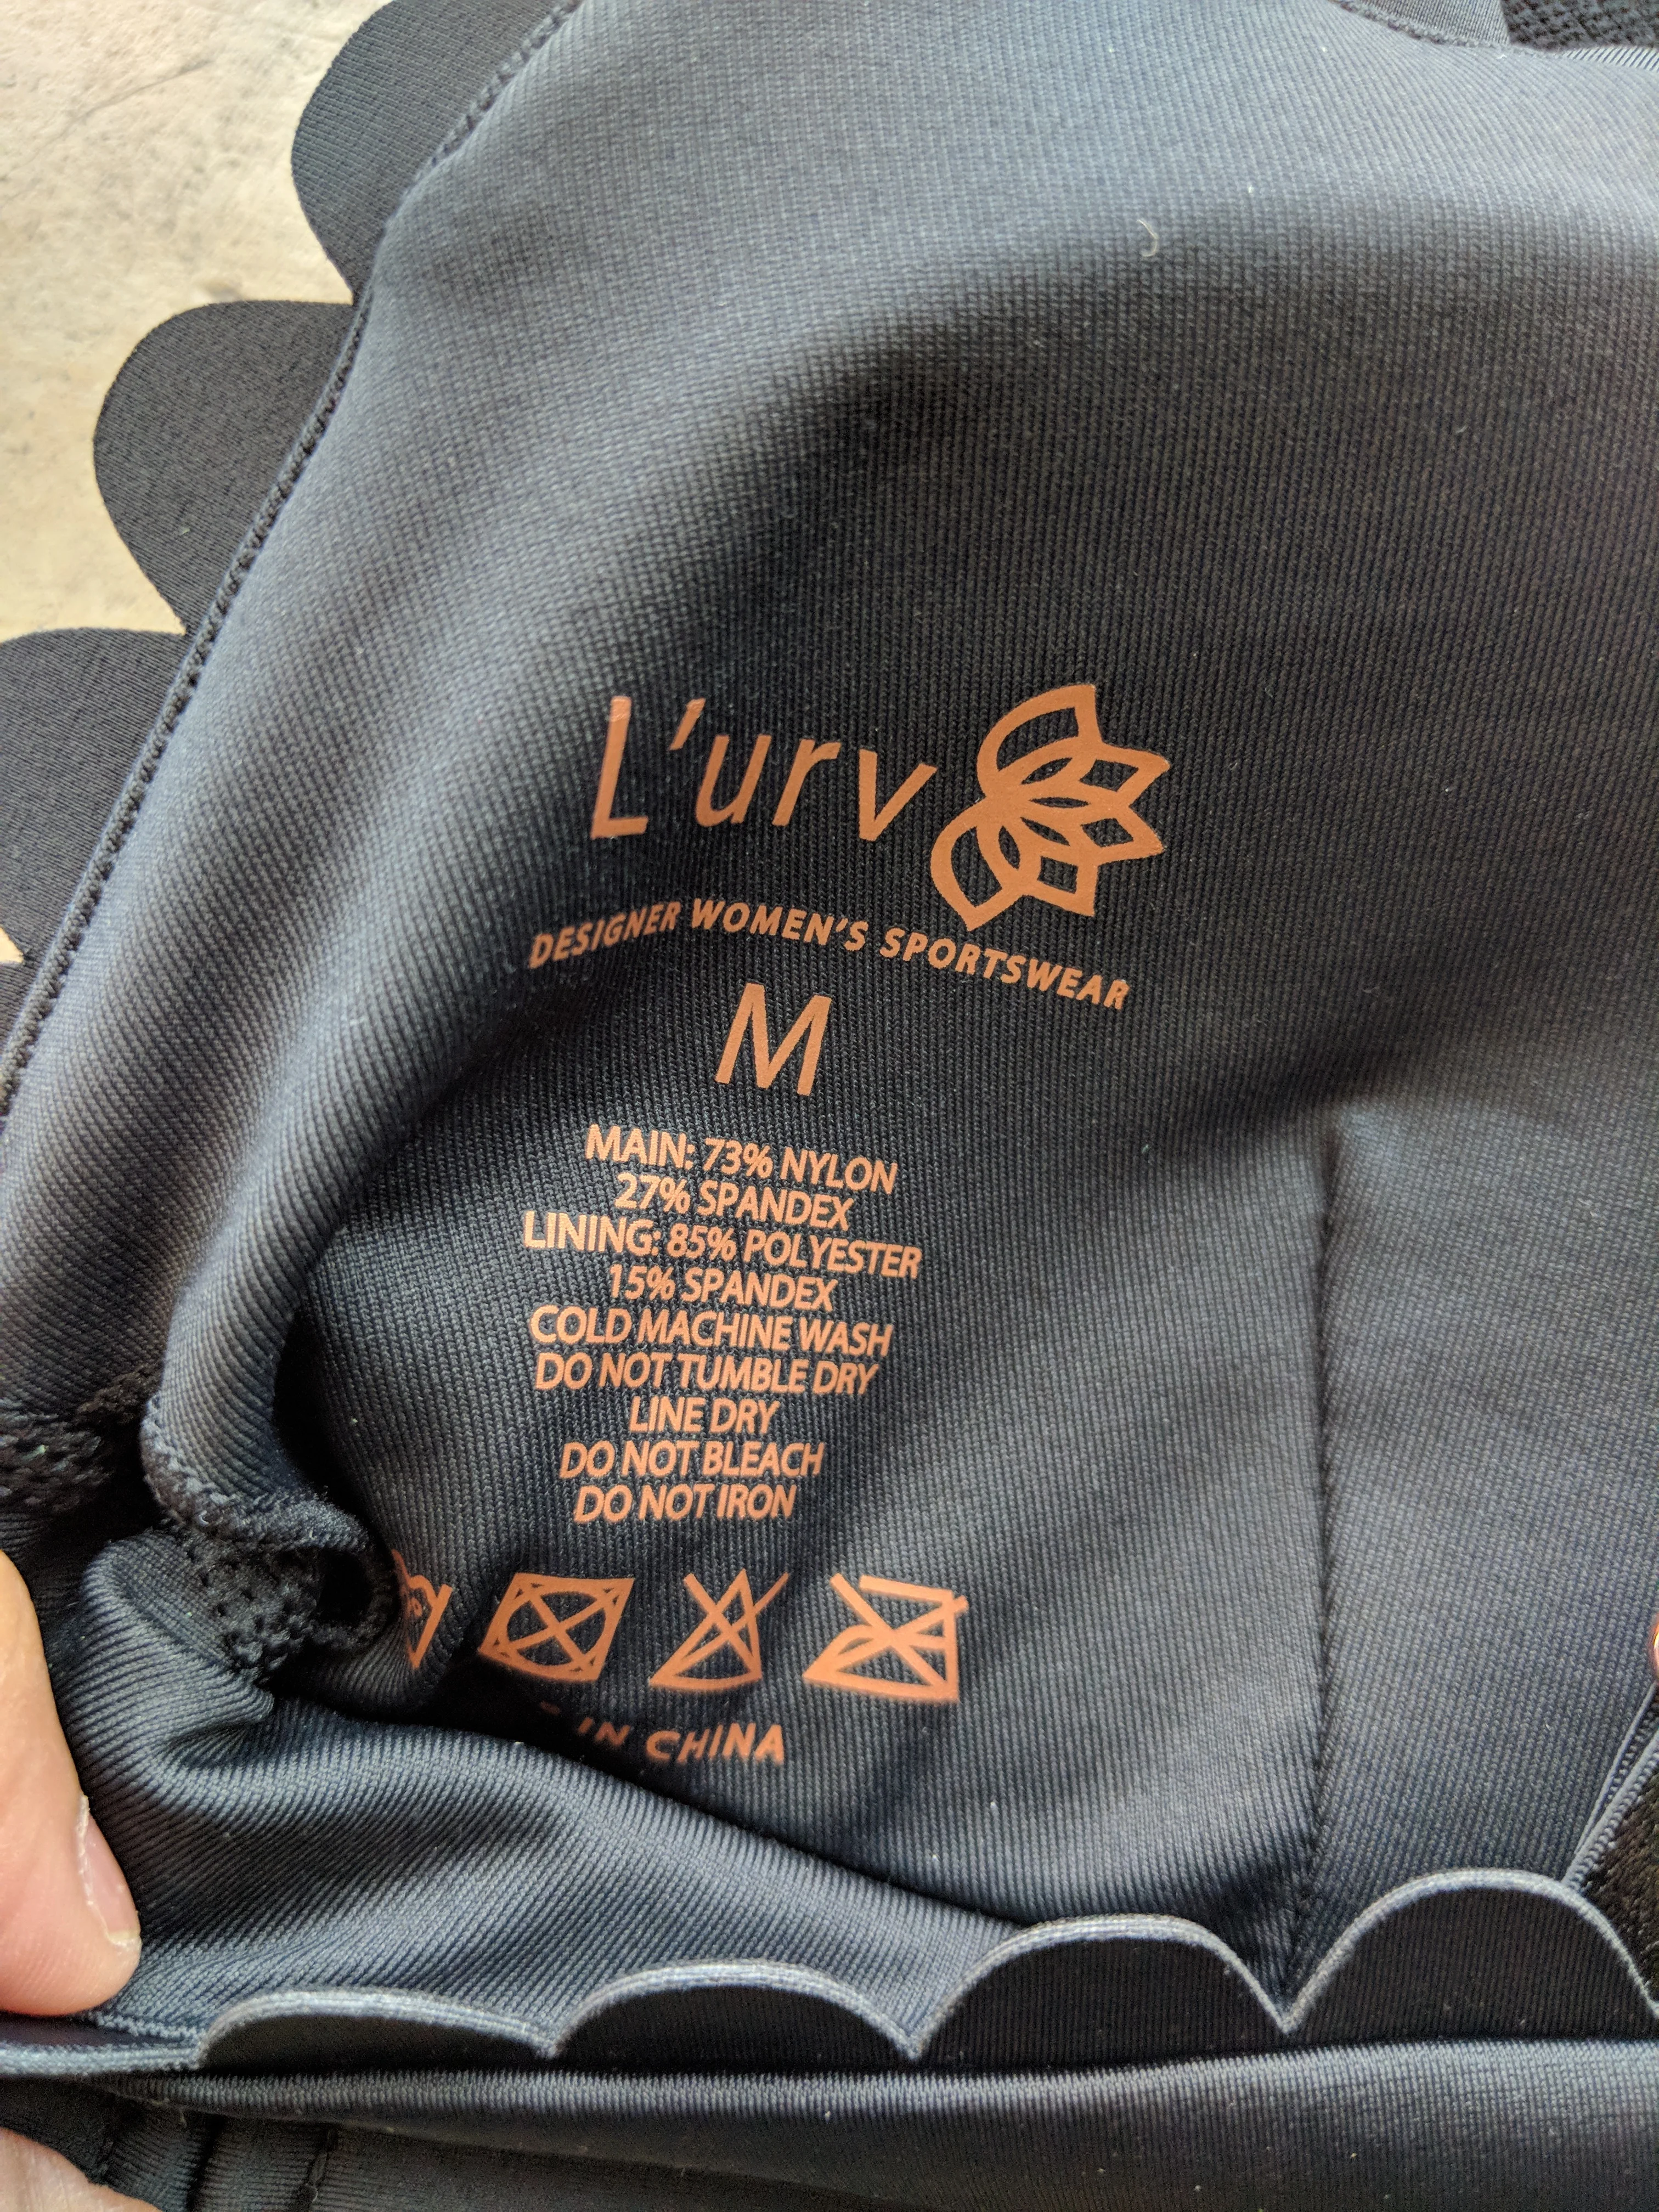 L'URV Activewear - I'm On Clouds Bralette - Label Detail